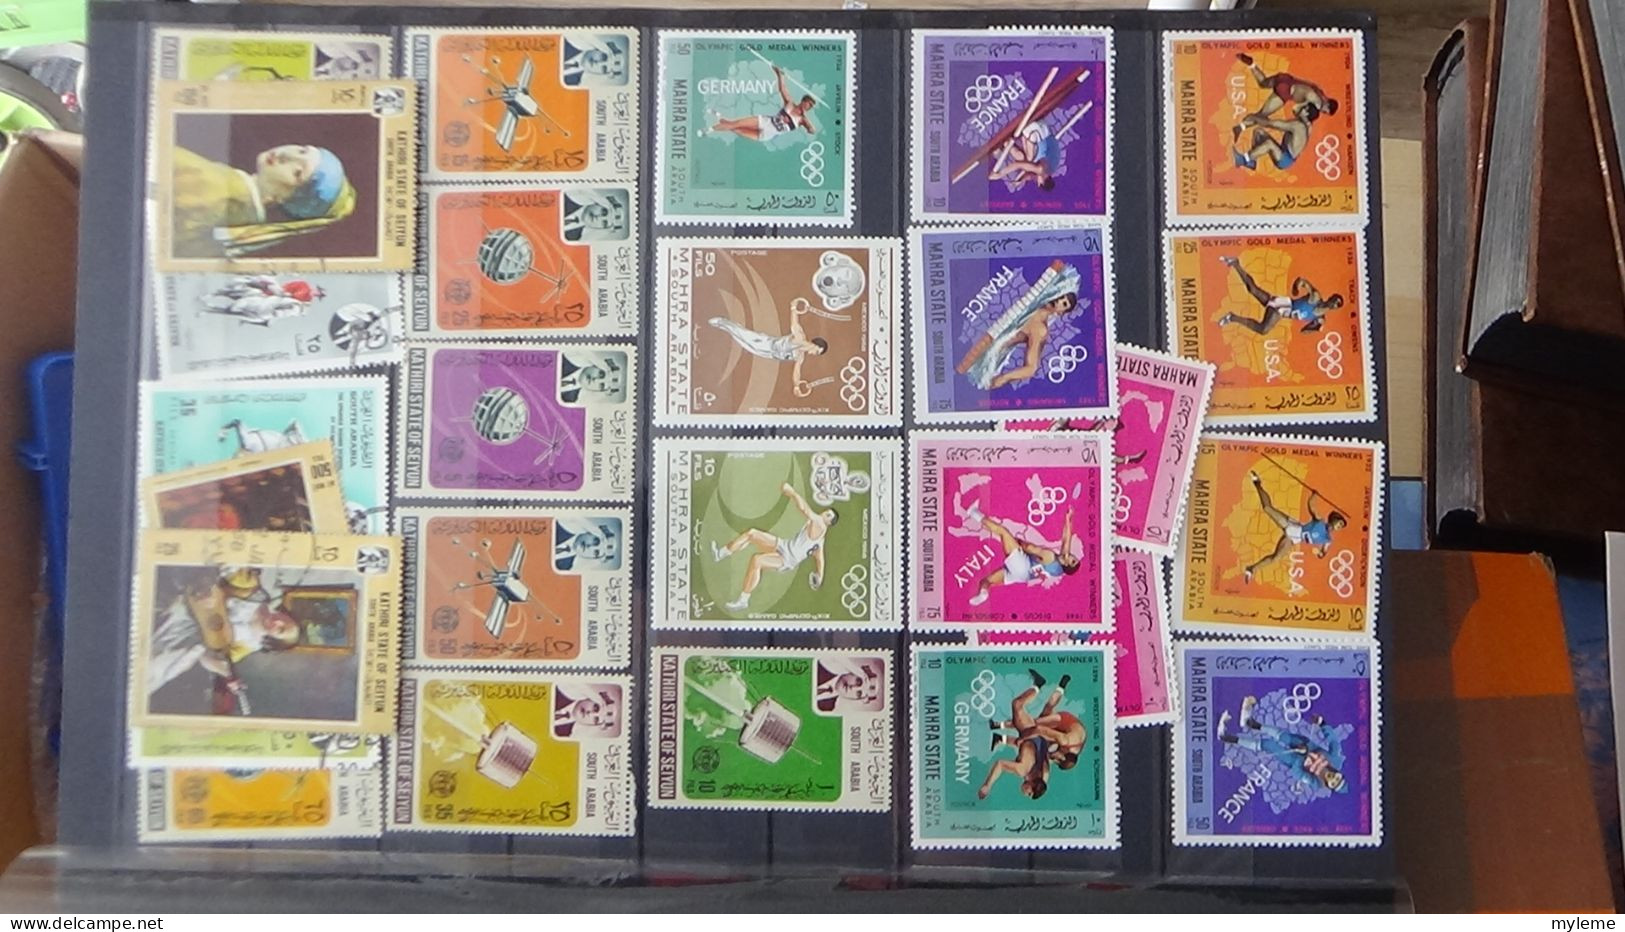 BF20 Ensemble de timbres et blocs oblitérés de divers pays + classiques de France ** avec petits défauts. Cote sympa !!!